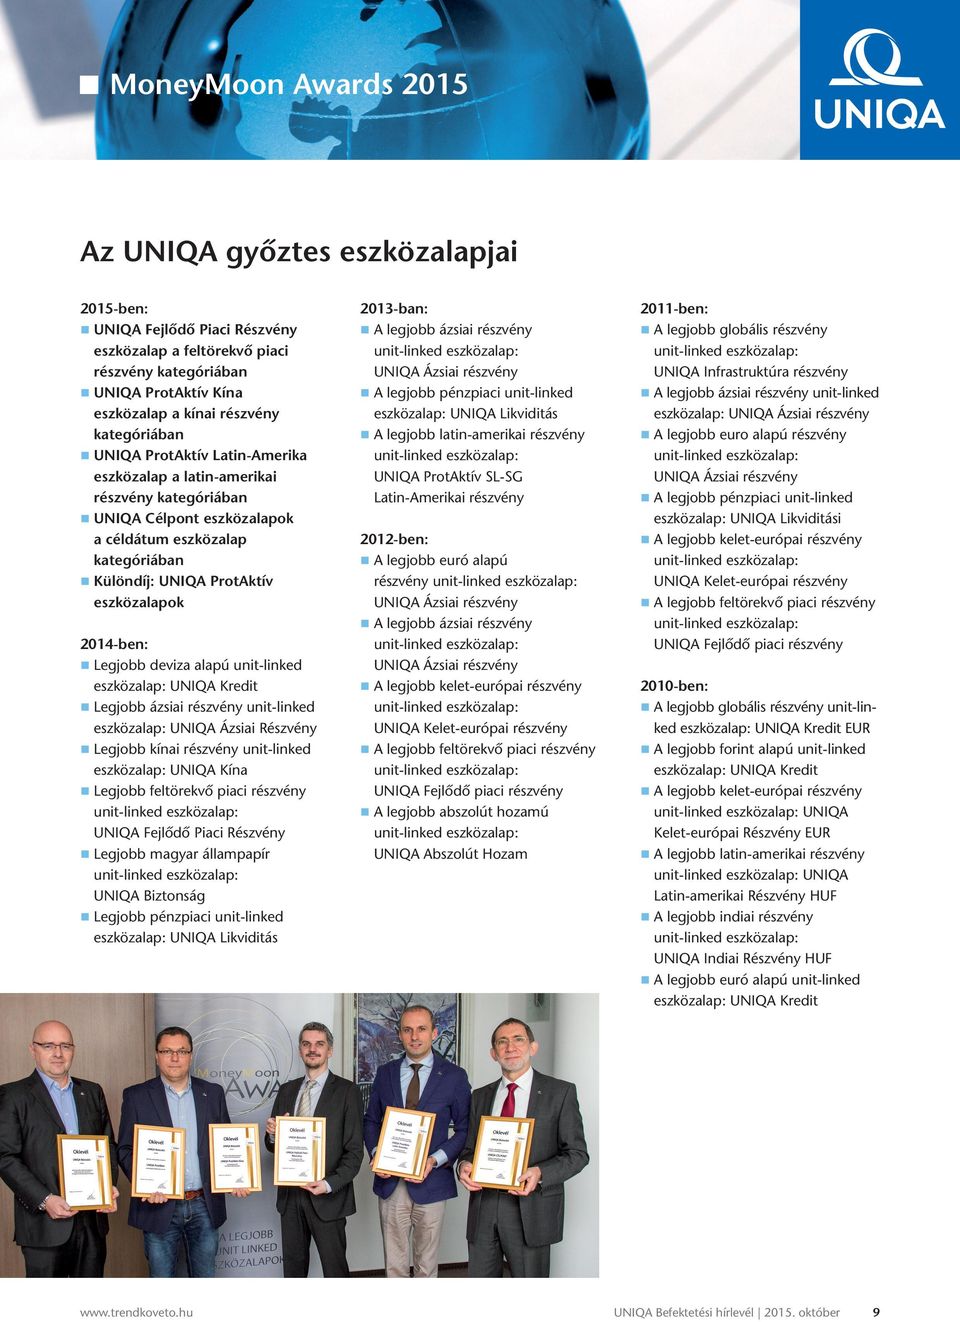 Részvény Legjobb kínai részvény unit-linked : UNIQA Kína Legjobb feltörekvő piaci részvény UNIQA Fejlődő Piaci Részvény Legjobb magyar állampapír UNIQA Biztonság Legjobb pénzpiaci unit-linked : UNIQA